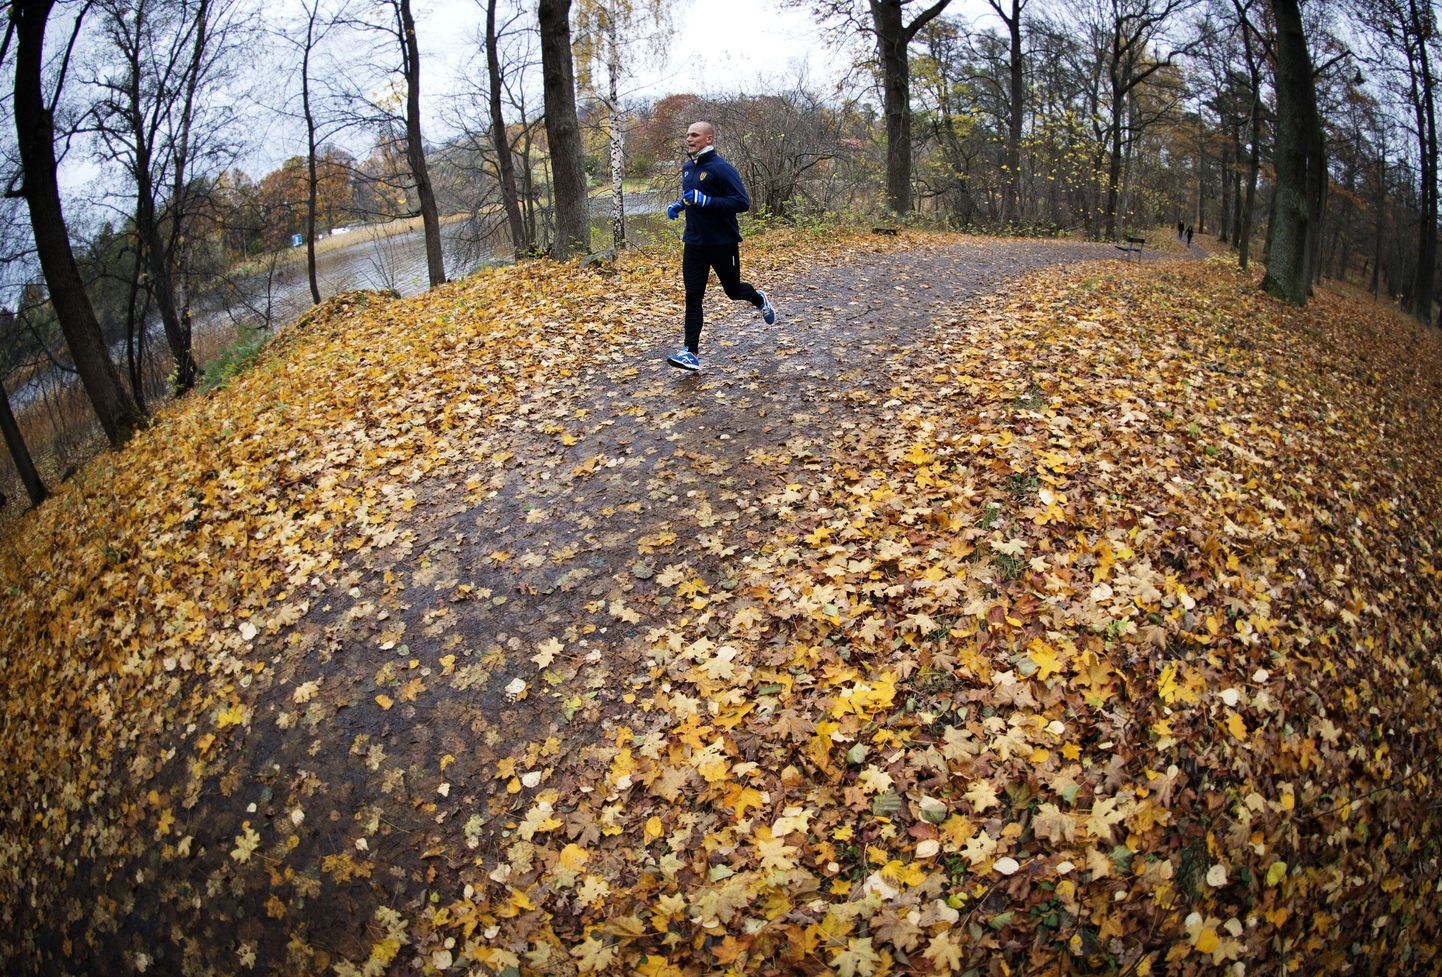 Stockholmis Djurgardeni pargis sai eile rahulikult joosta.